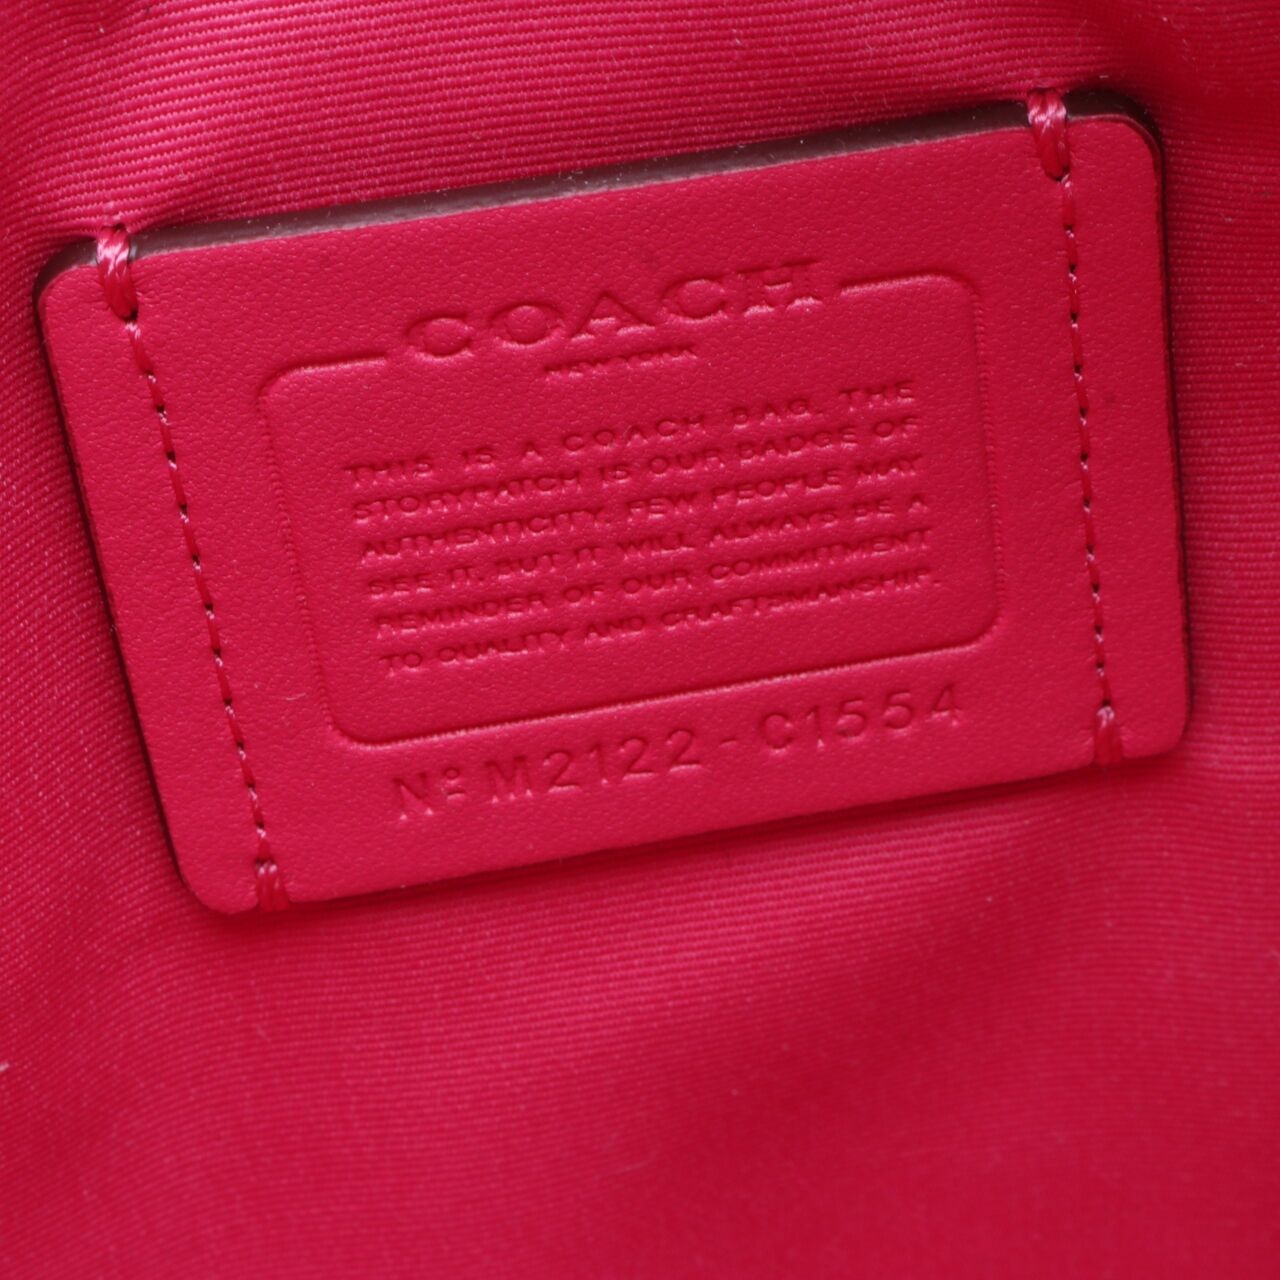 Coach Signature Rowan File Khaki/Bold Pink Crossbody Bag